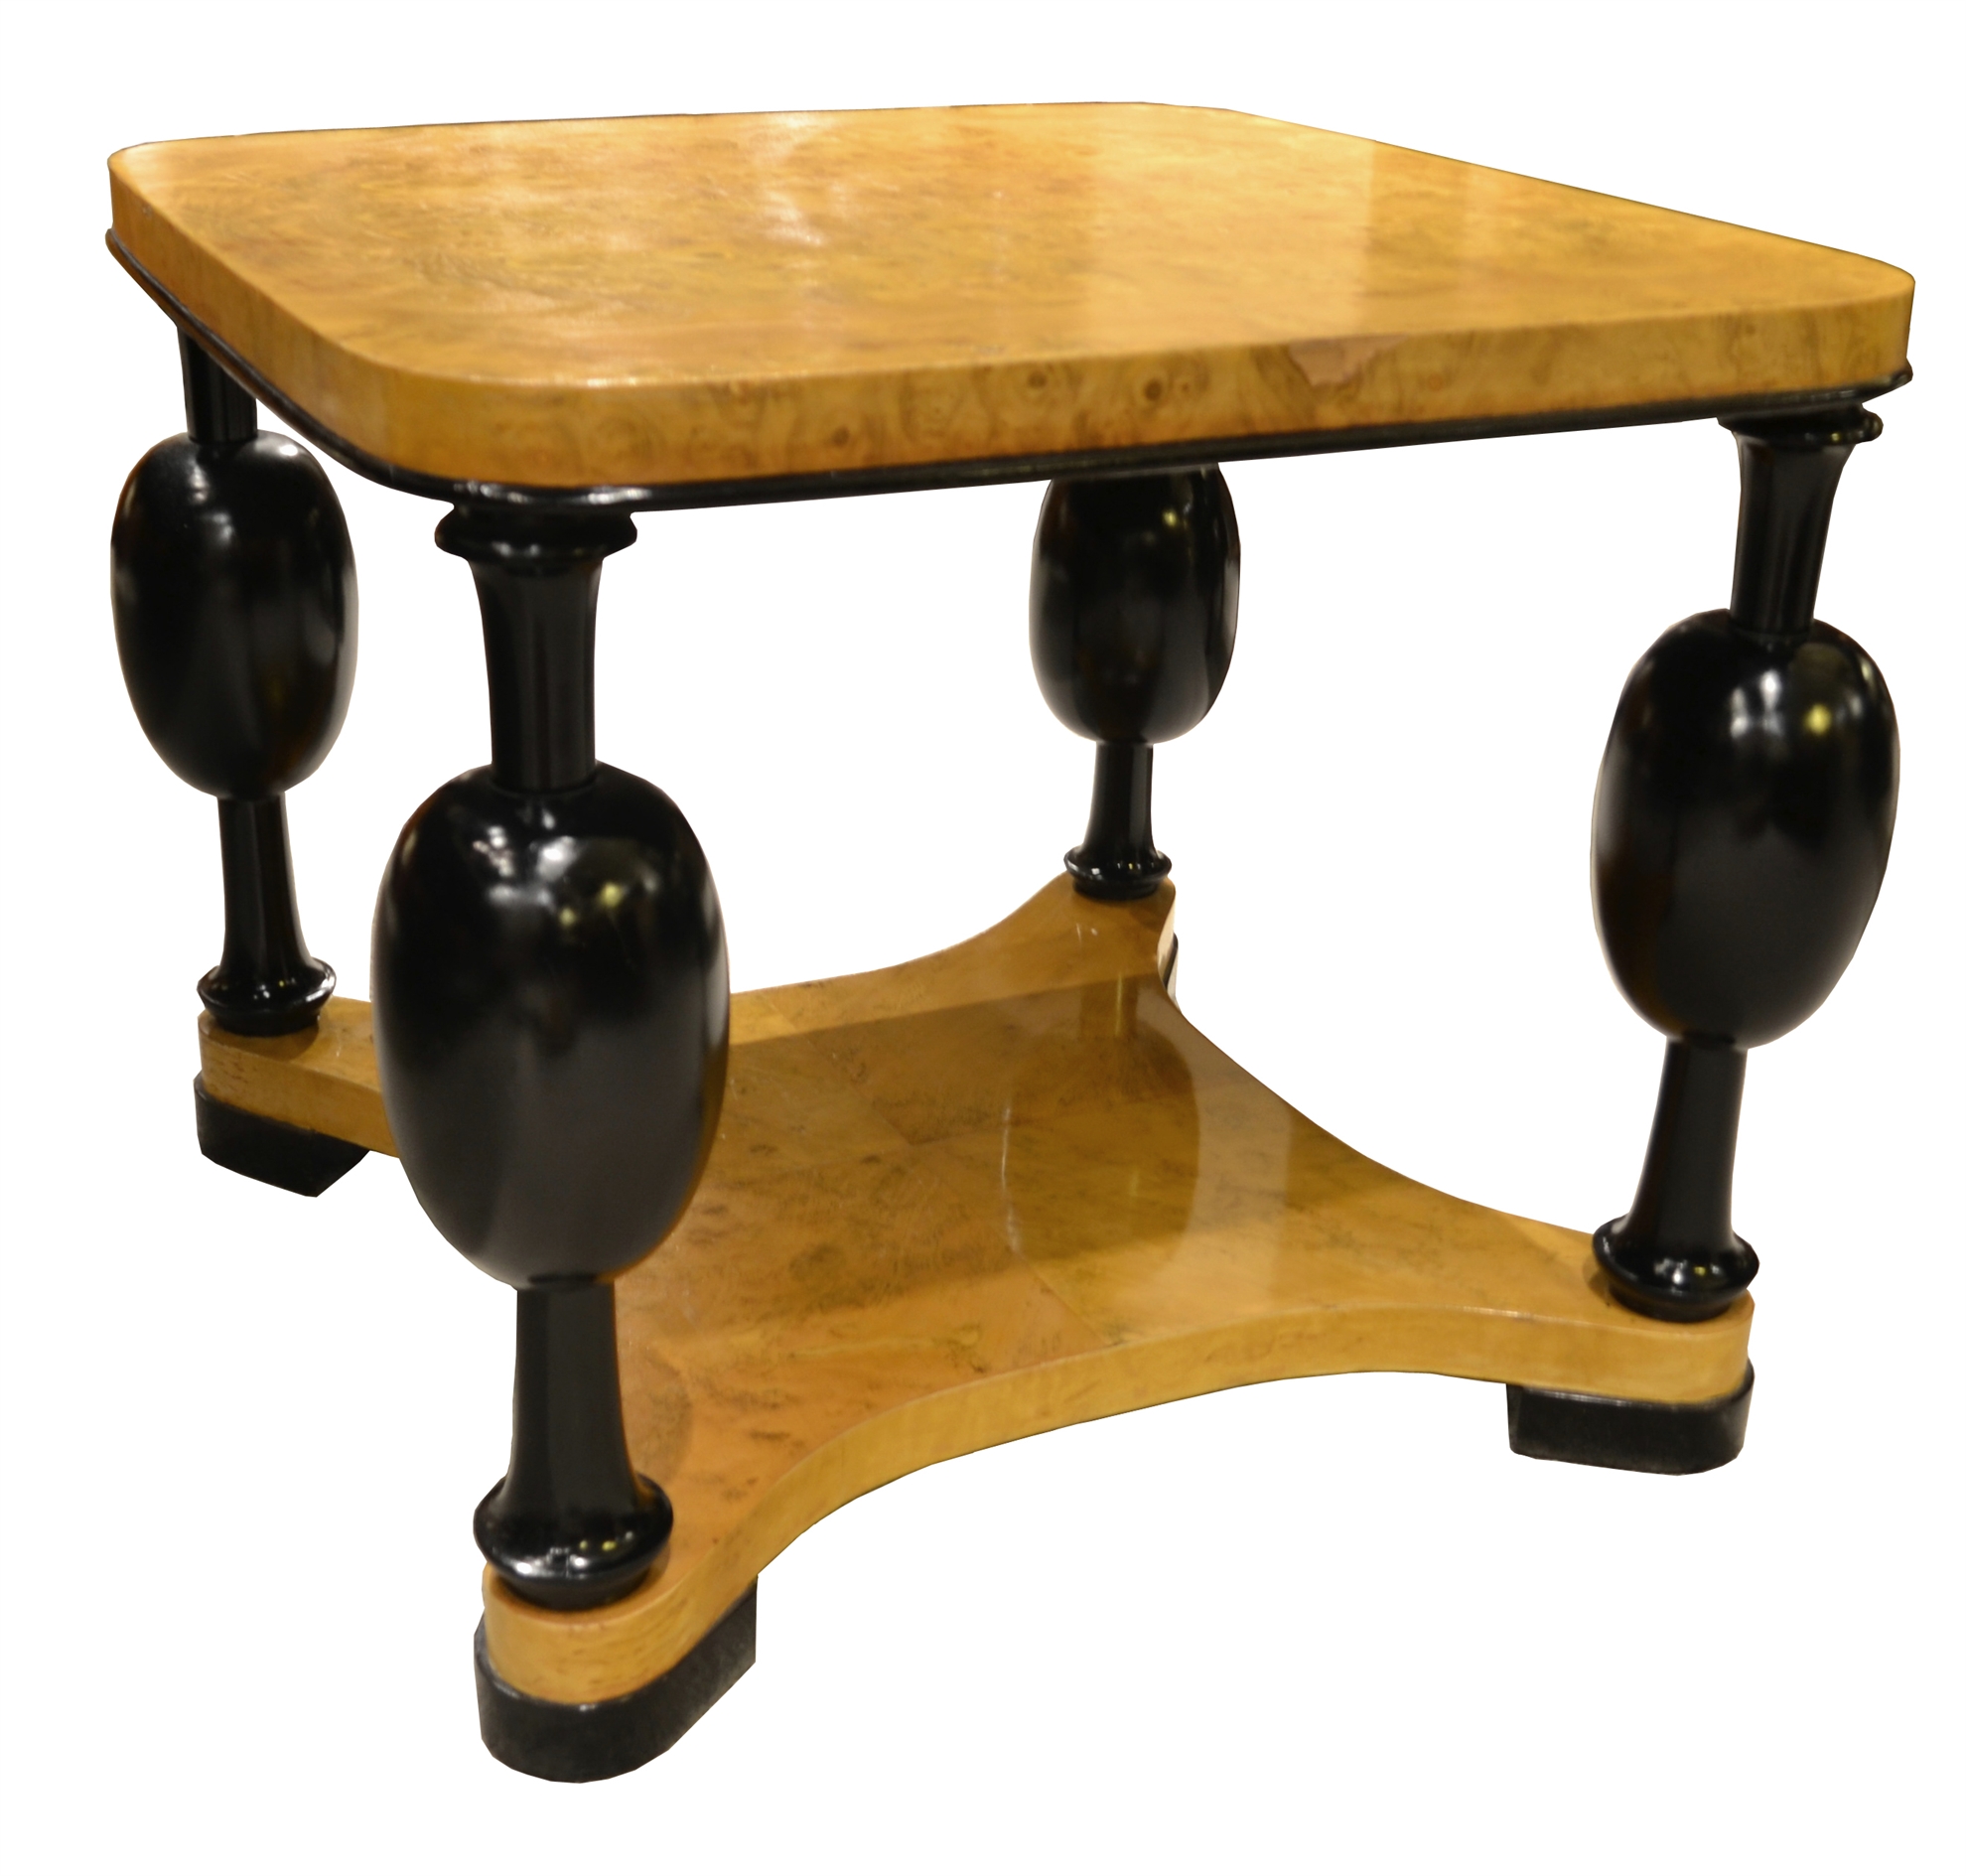 125/2033 - Swedish Biedermeier Side Table